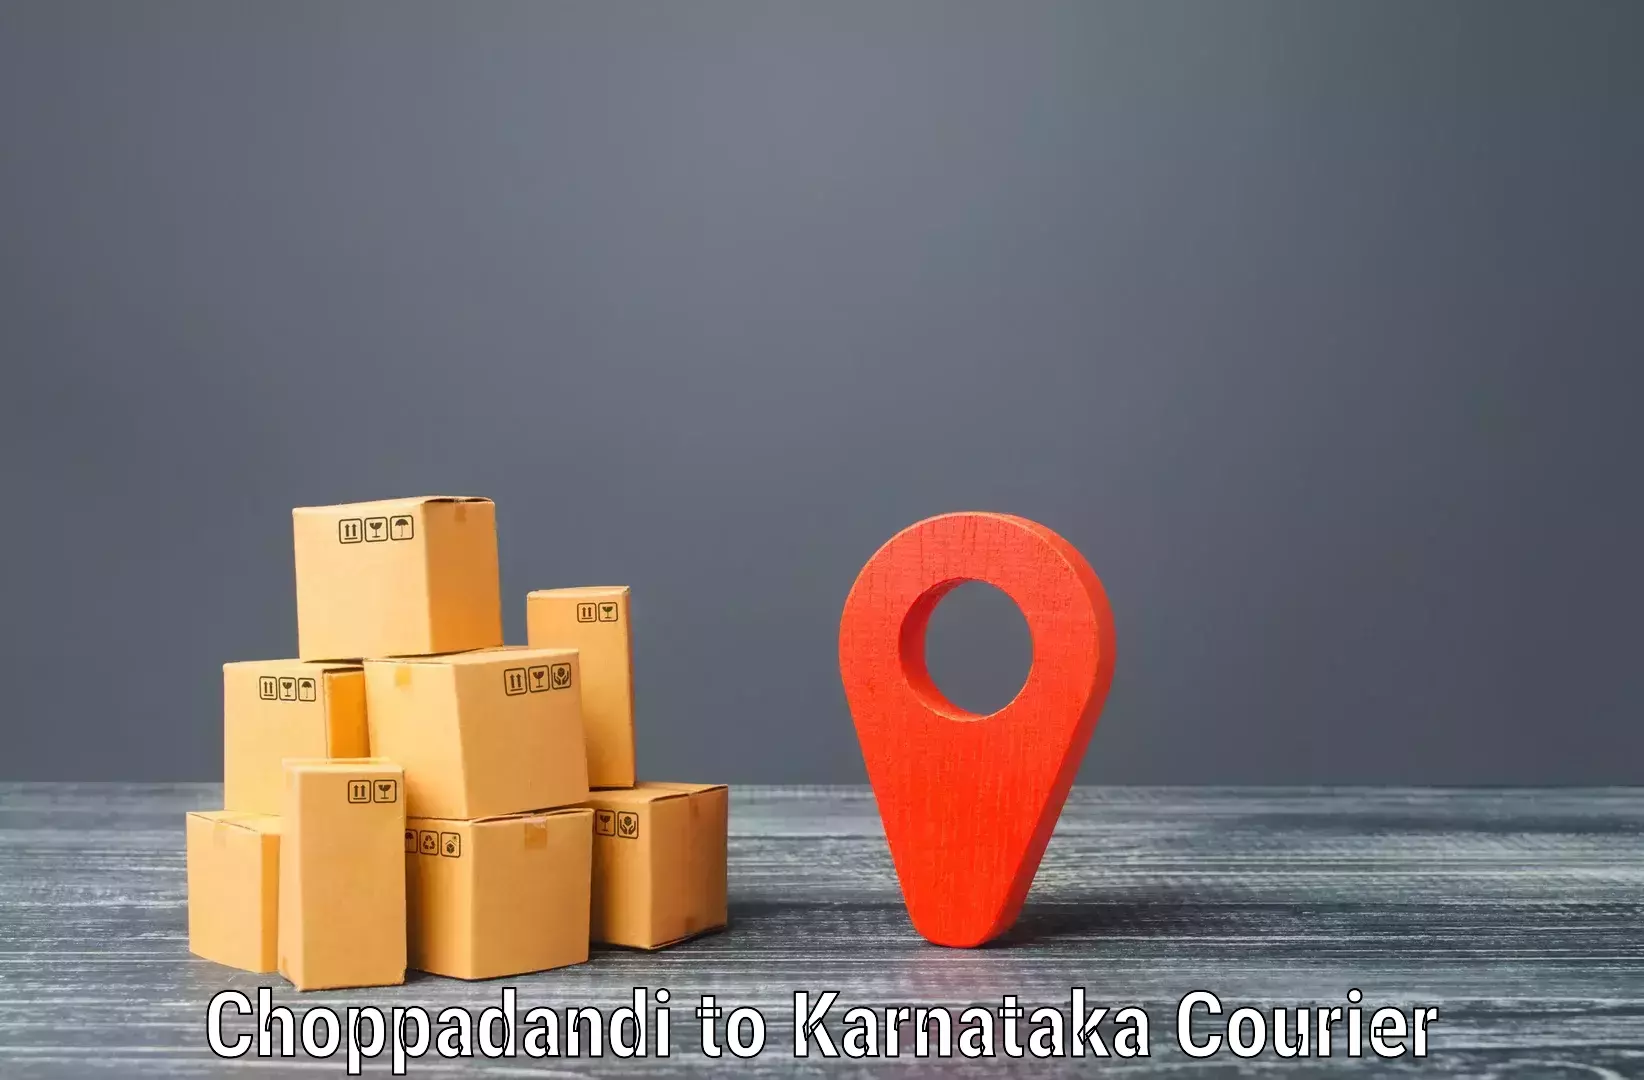 Seamless shipping service Choppadandi to NIT Srinivasanagar